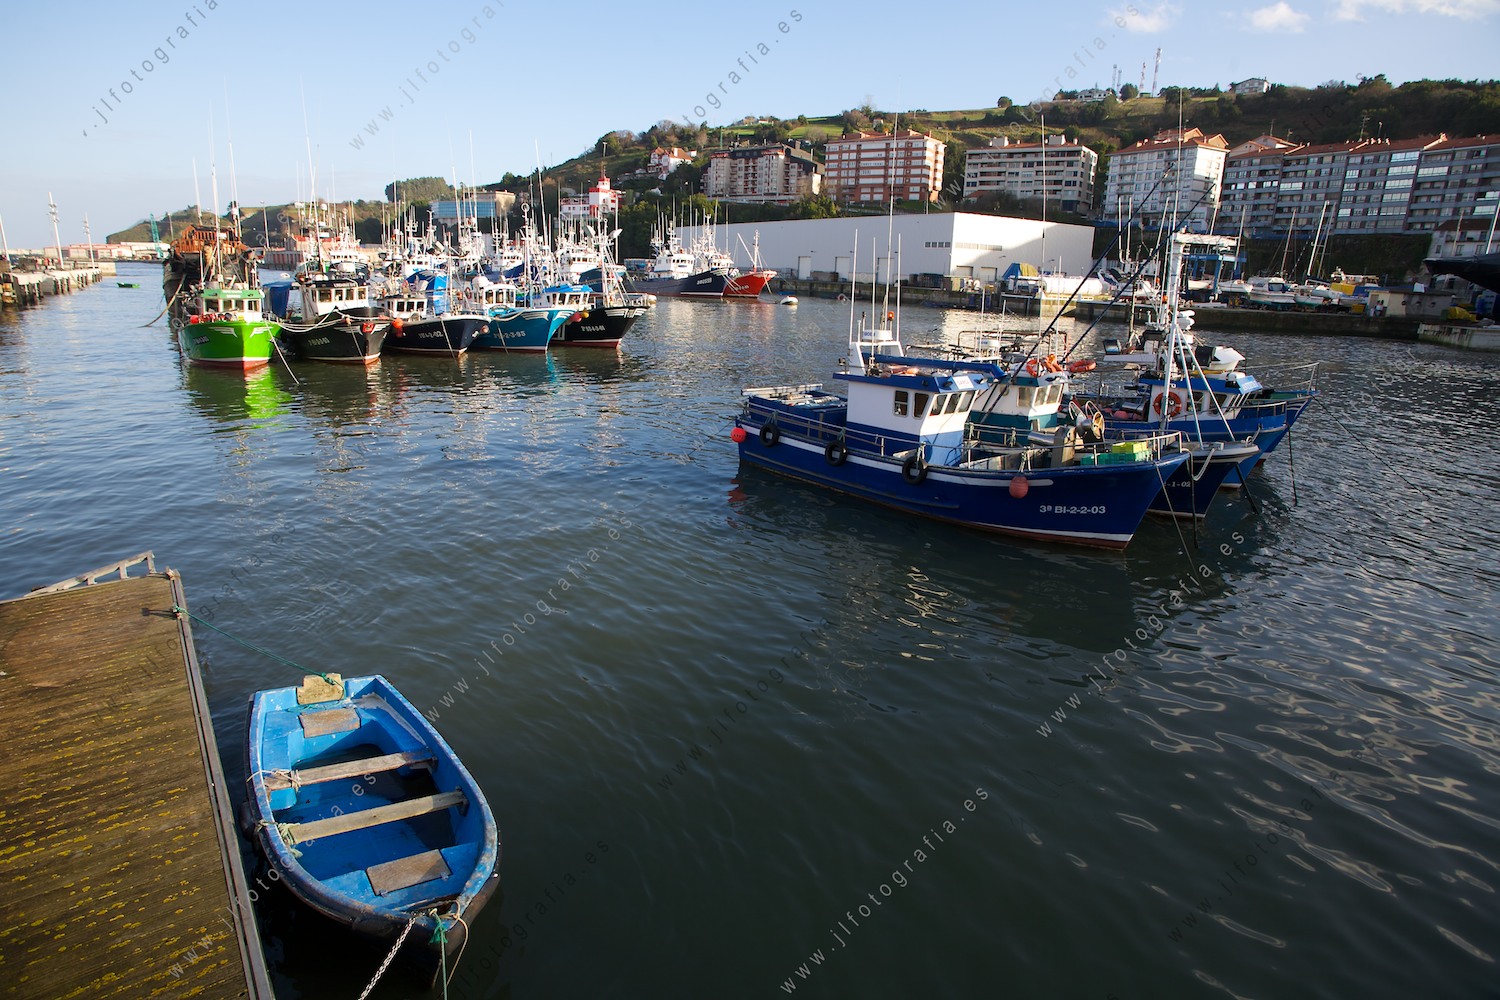 El interior del puerto de Bermeo, con los barcos de pesca en aguas tranquilas